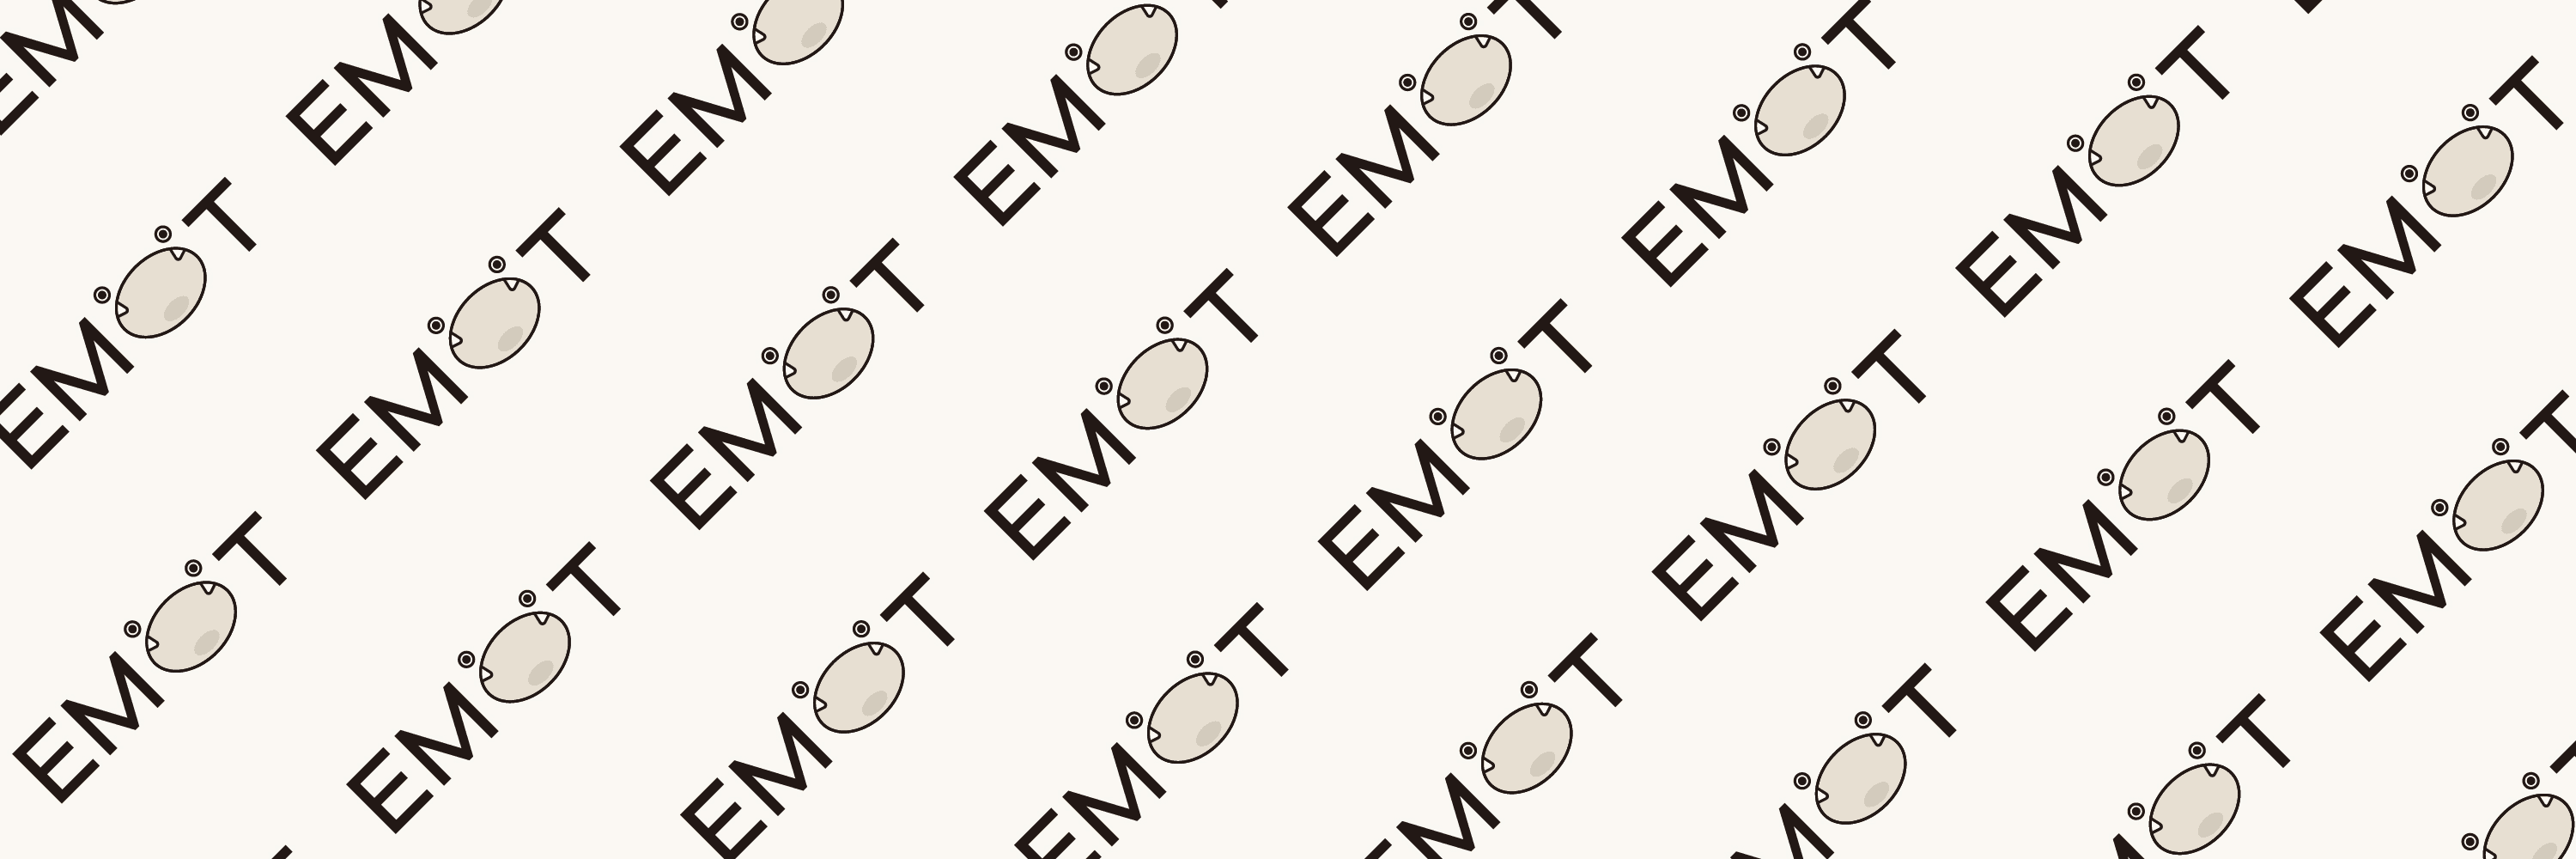 EMOT_nft bannière